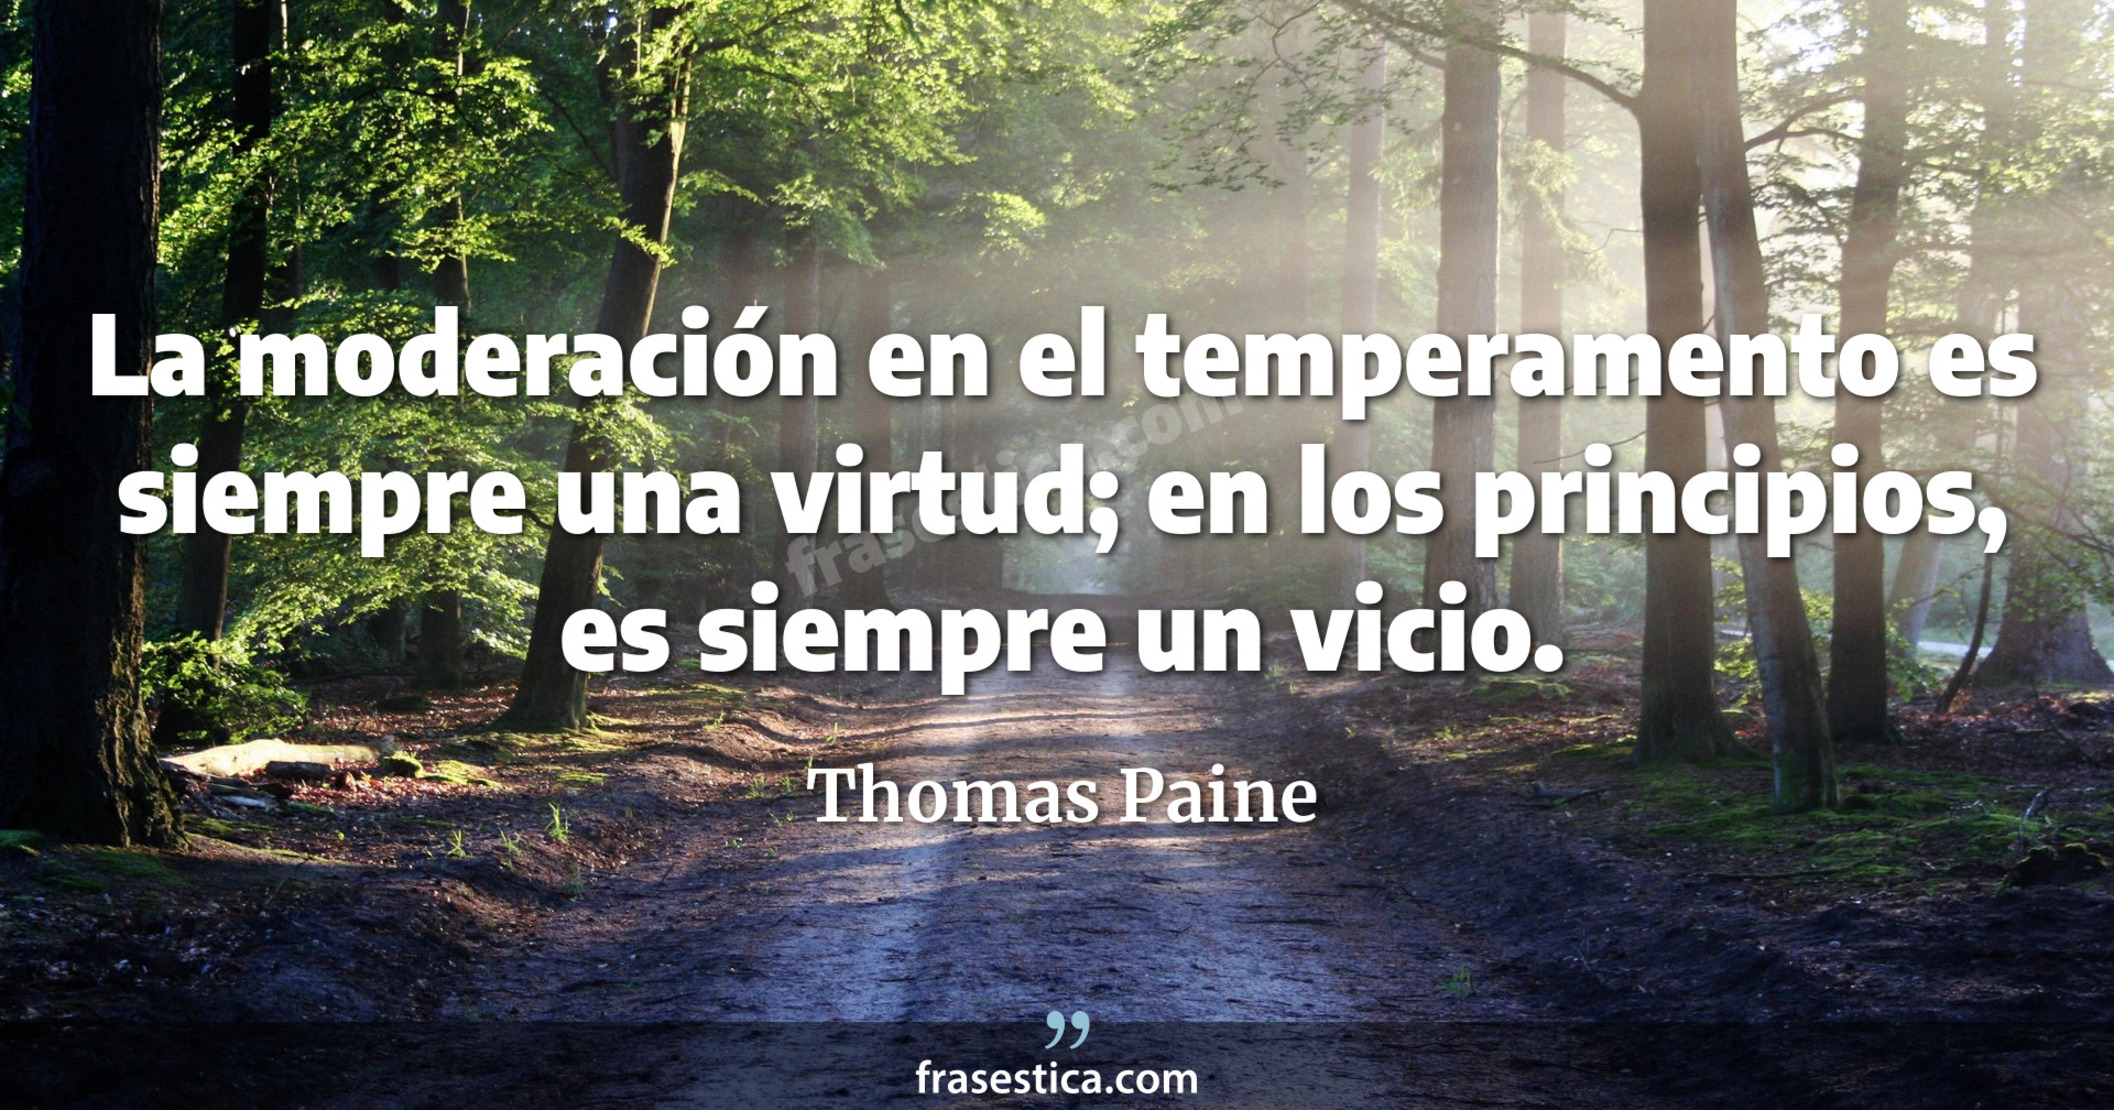 La moderación en el temperamento es siempre una virtud; en los principios, es siempre un vicio. - Thomas Paine